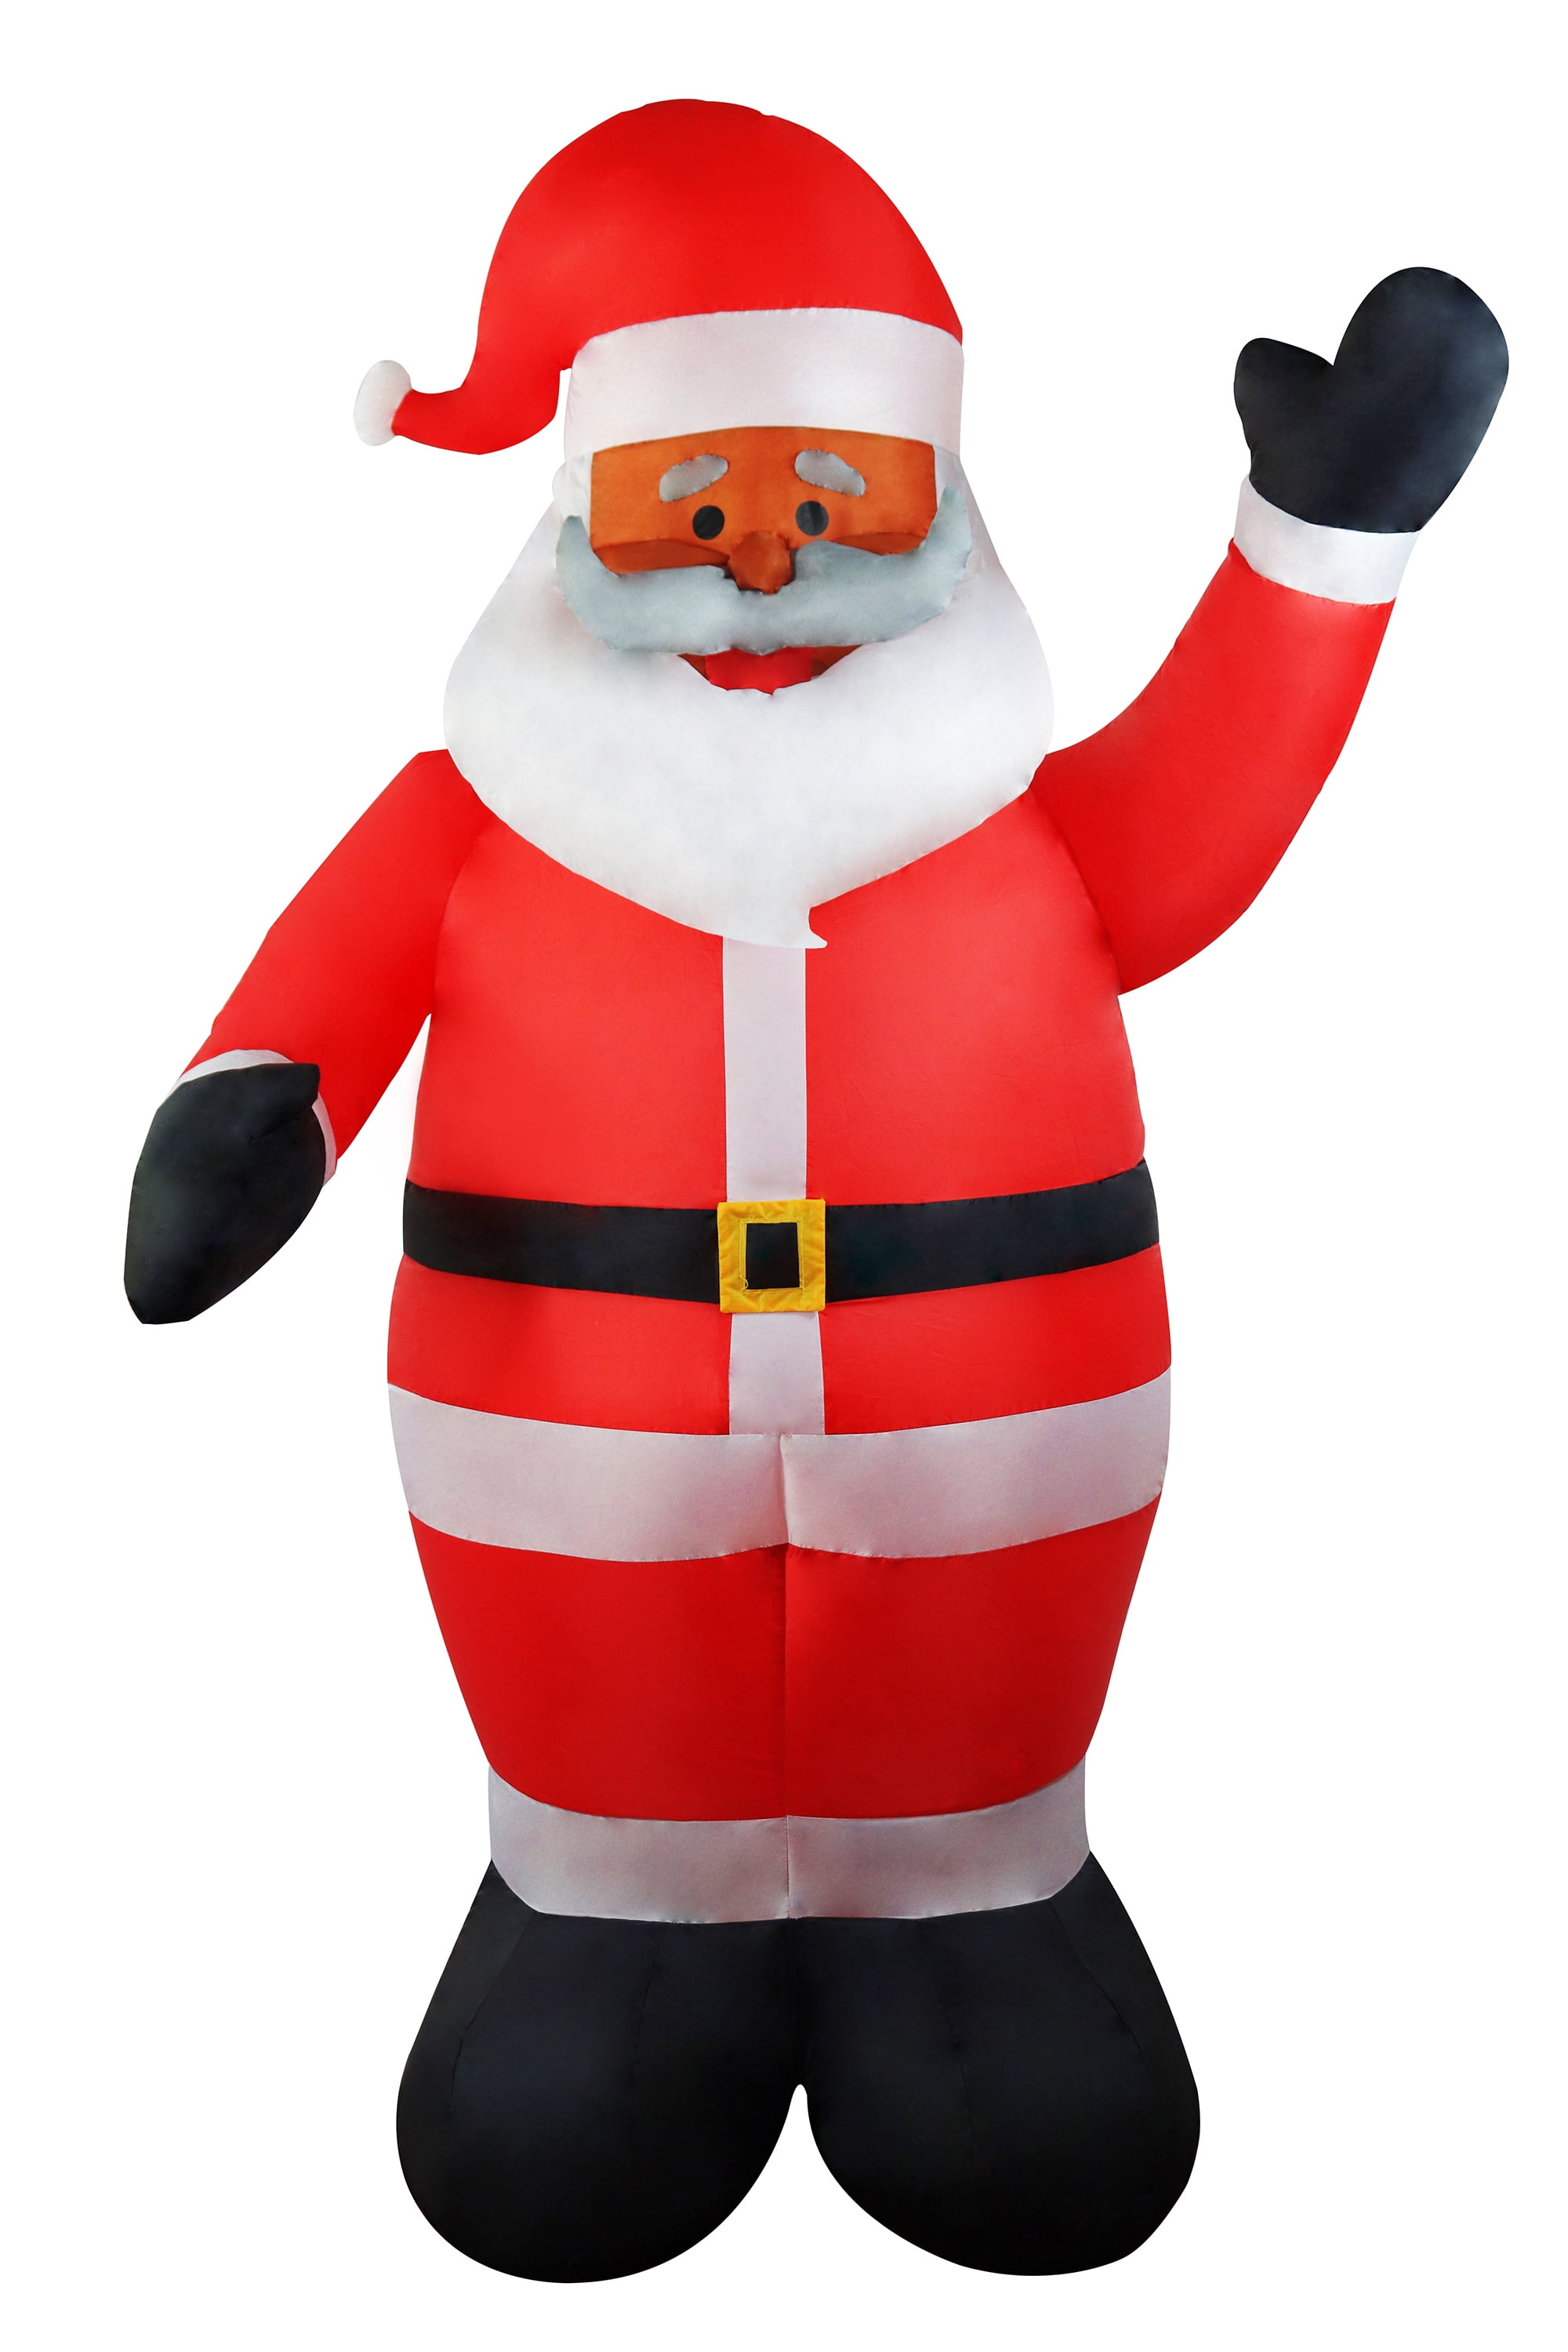 6 Foot Long Christmas Inflatable Santa Claus Black Santa Inflatable Yard  Decoration Christmas Inflatables